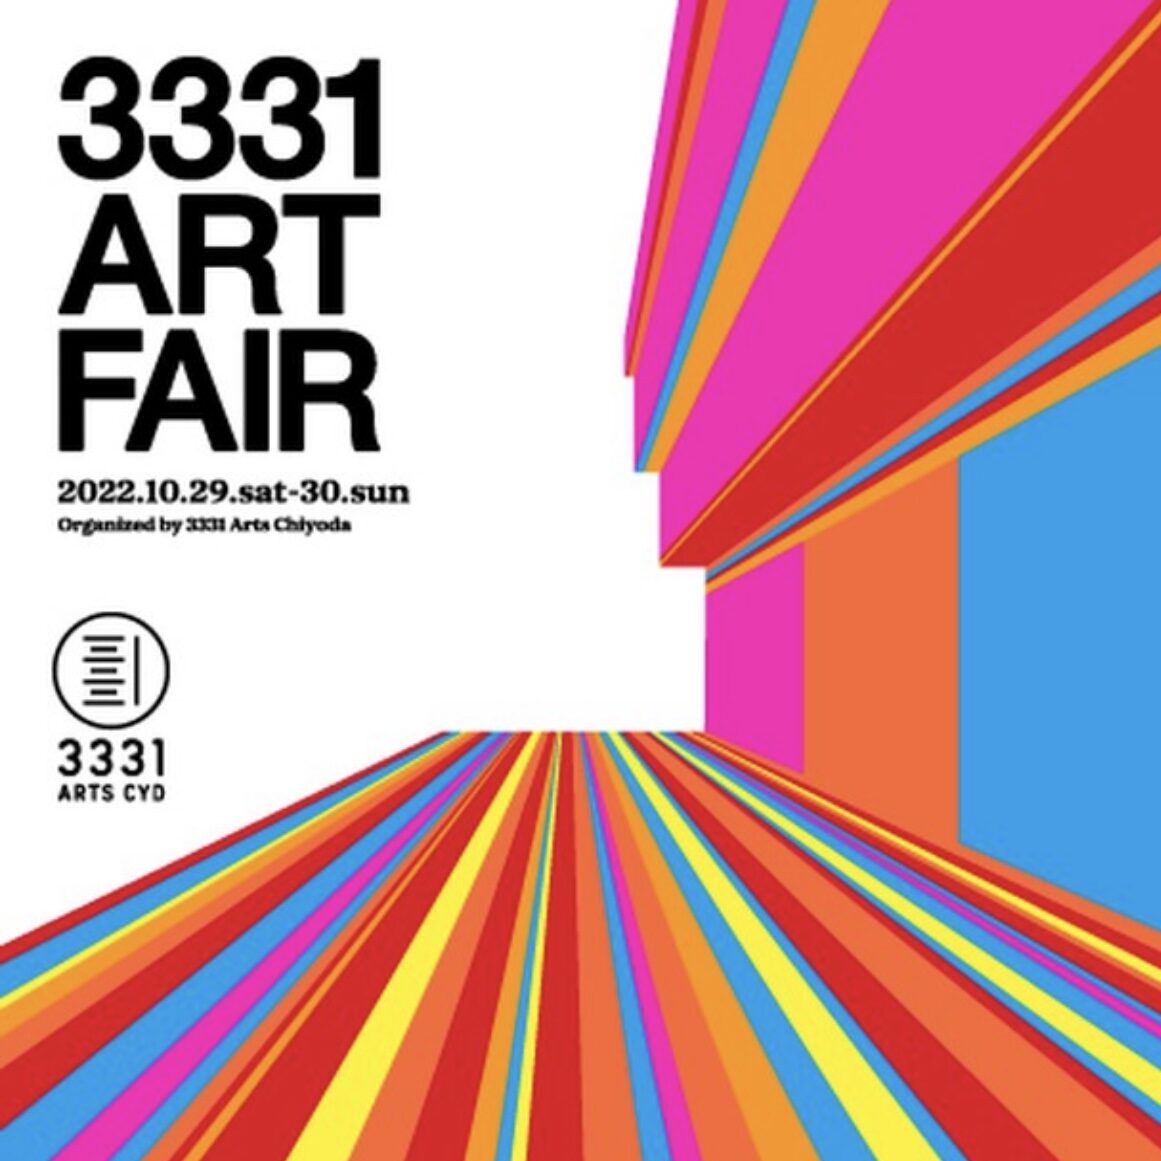 3331 ART FAIR - katsumiyamato